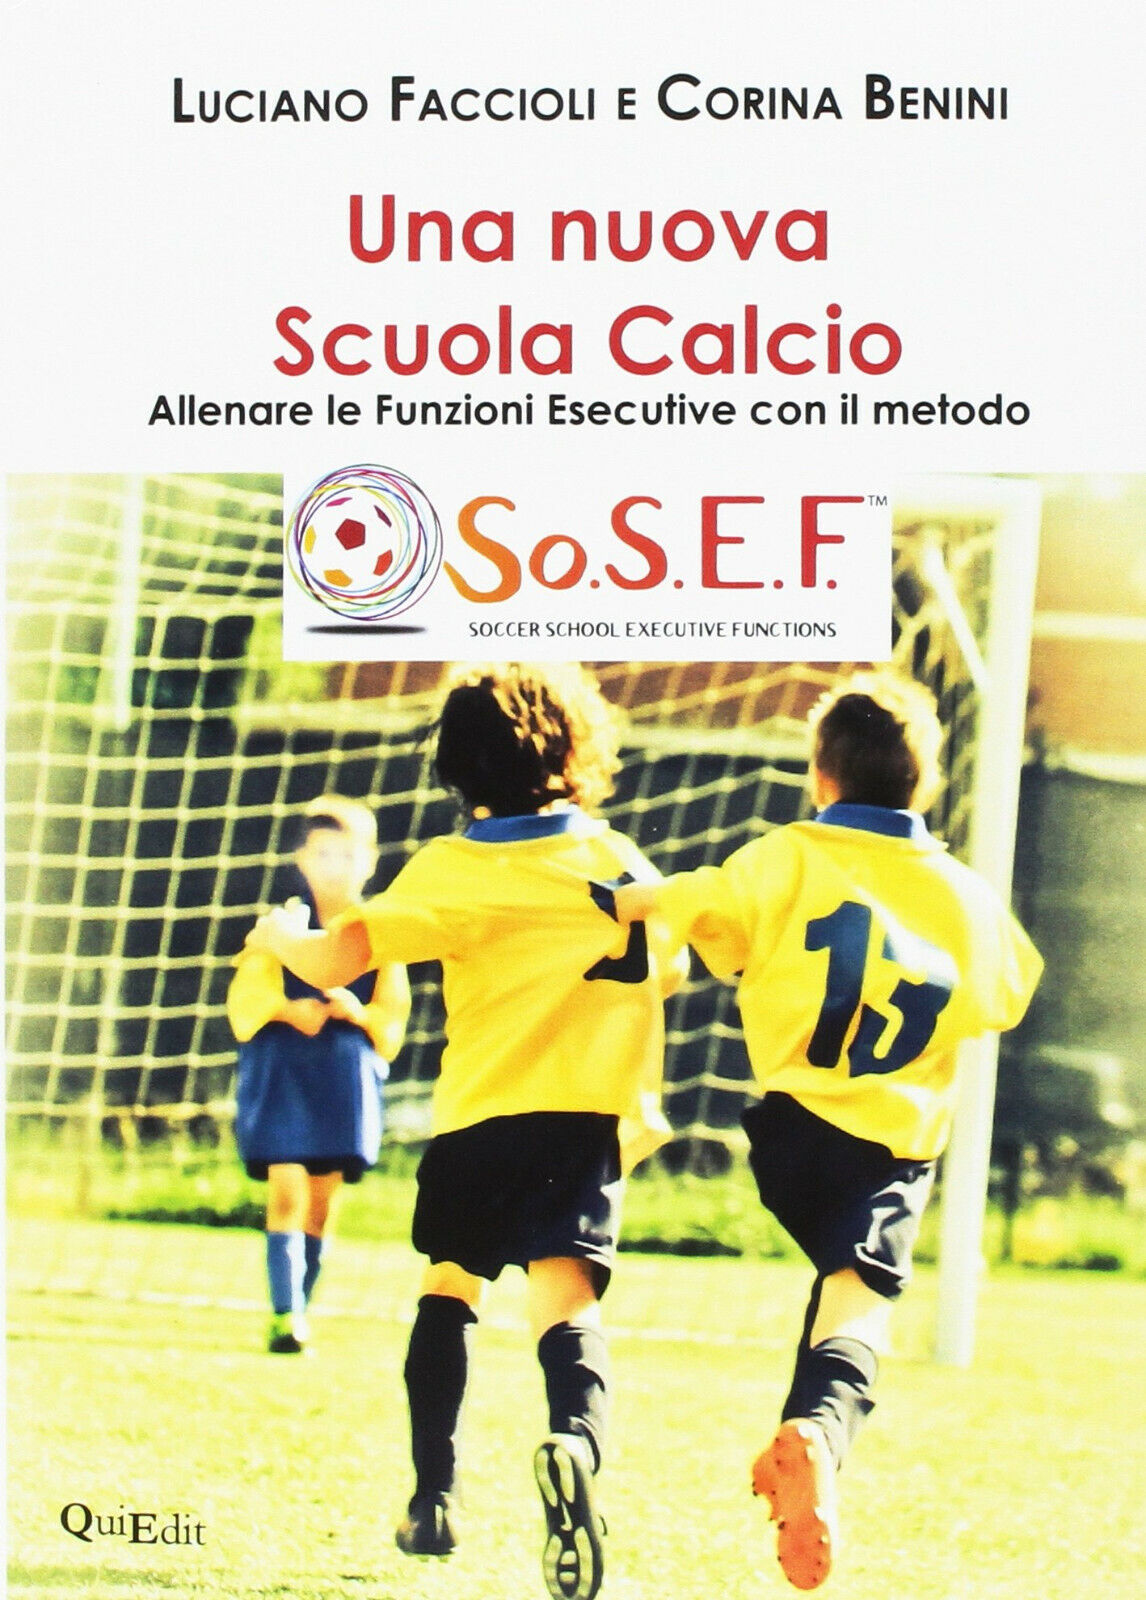 Una nuova scuola calcio - Luciano Faccioli, Corina Benini - QuiEdit, 2018